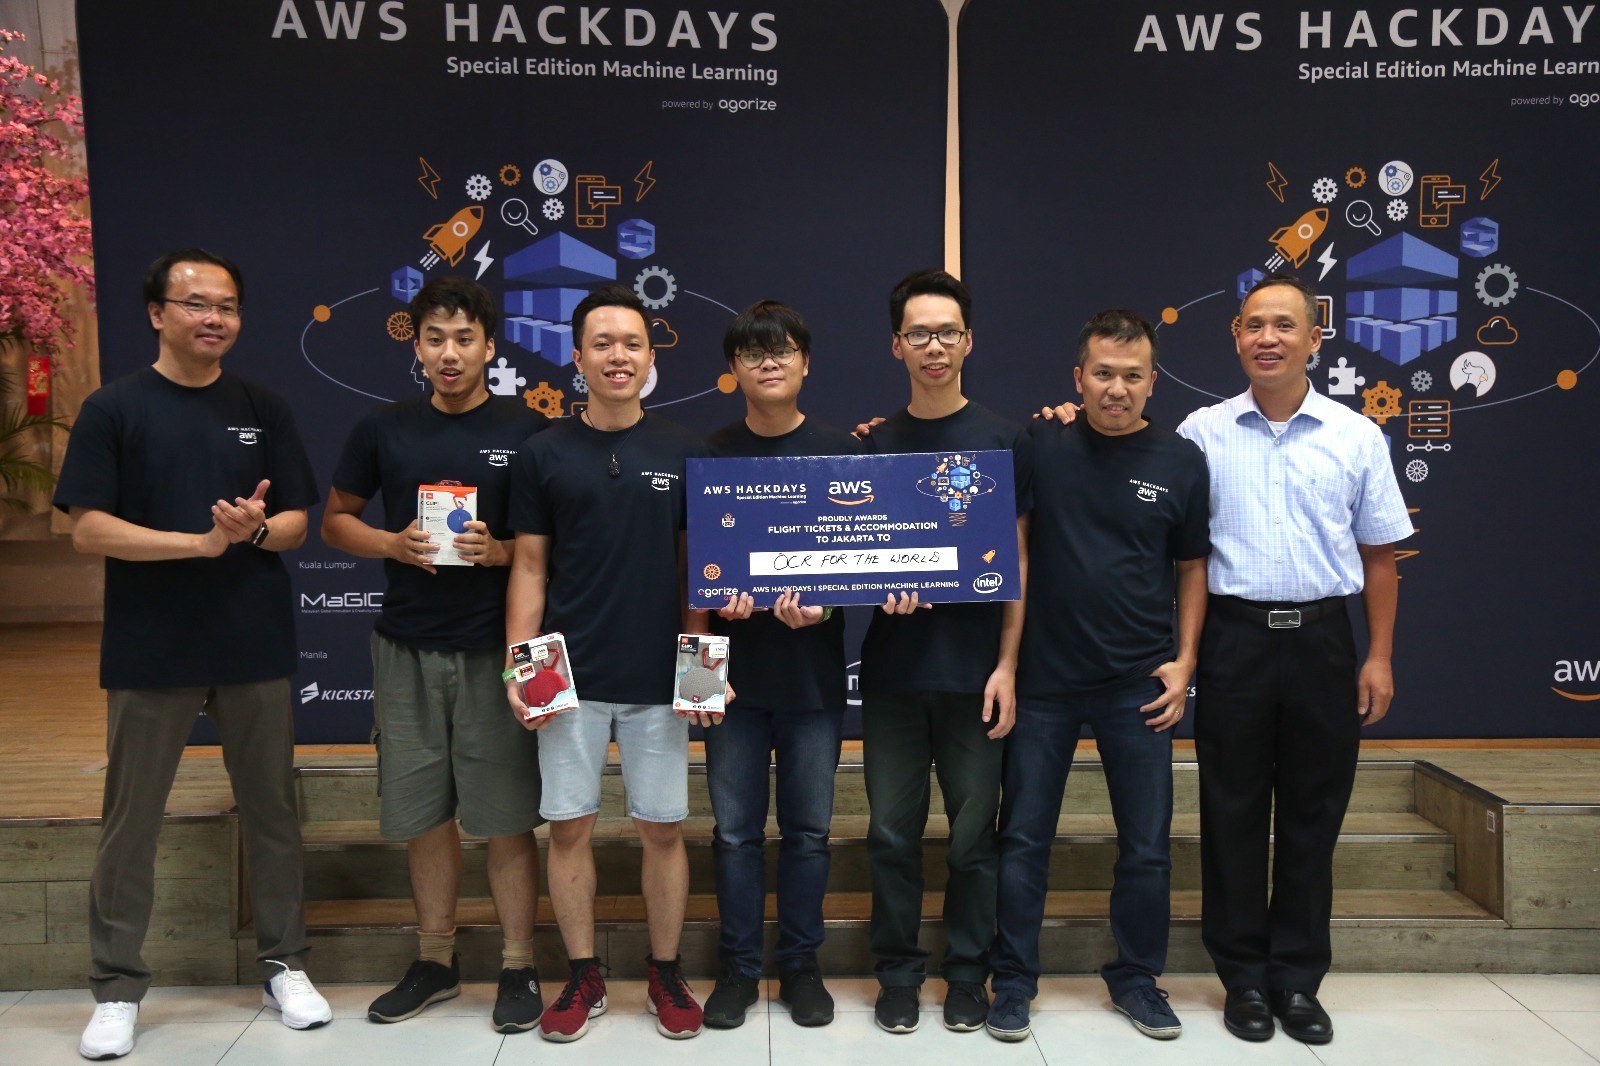 OCR For the World đại diện Việt Nam tham dự vòng chung kết AWS Hackdays 2018